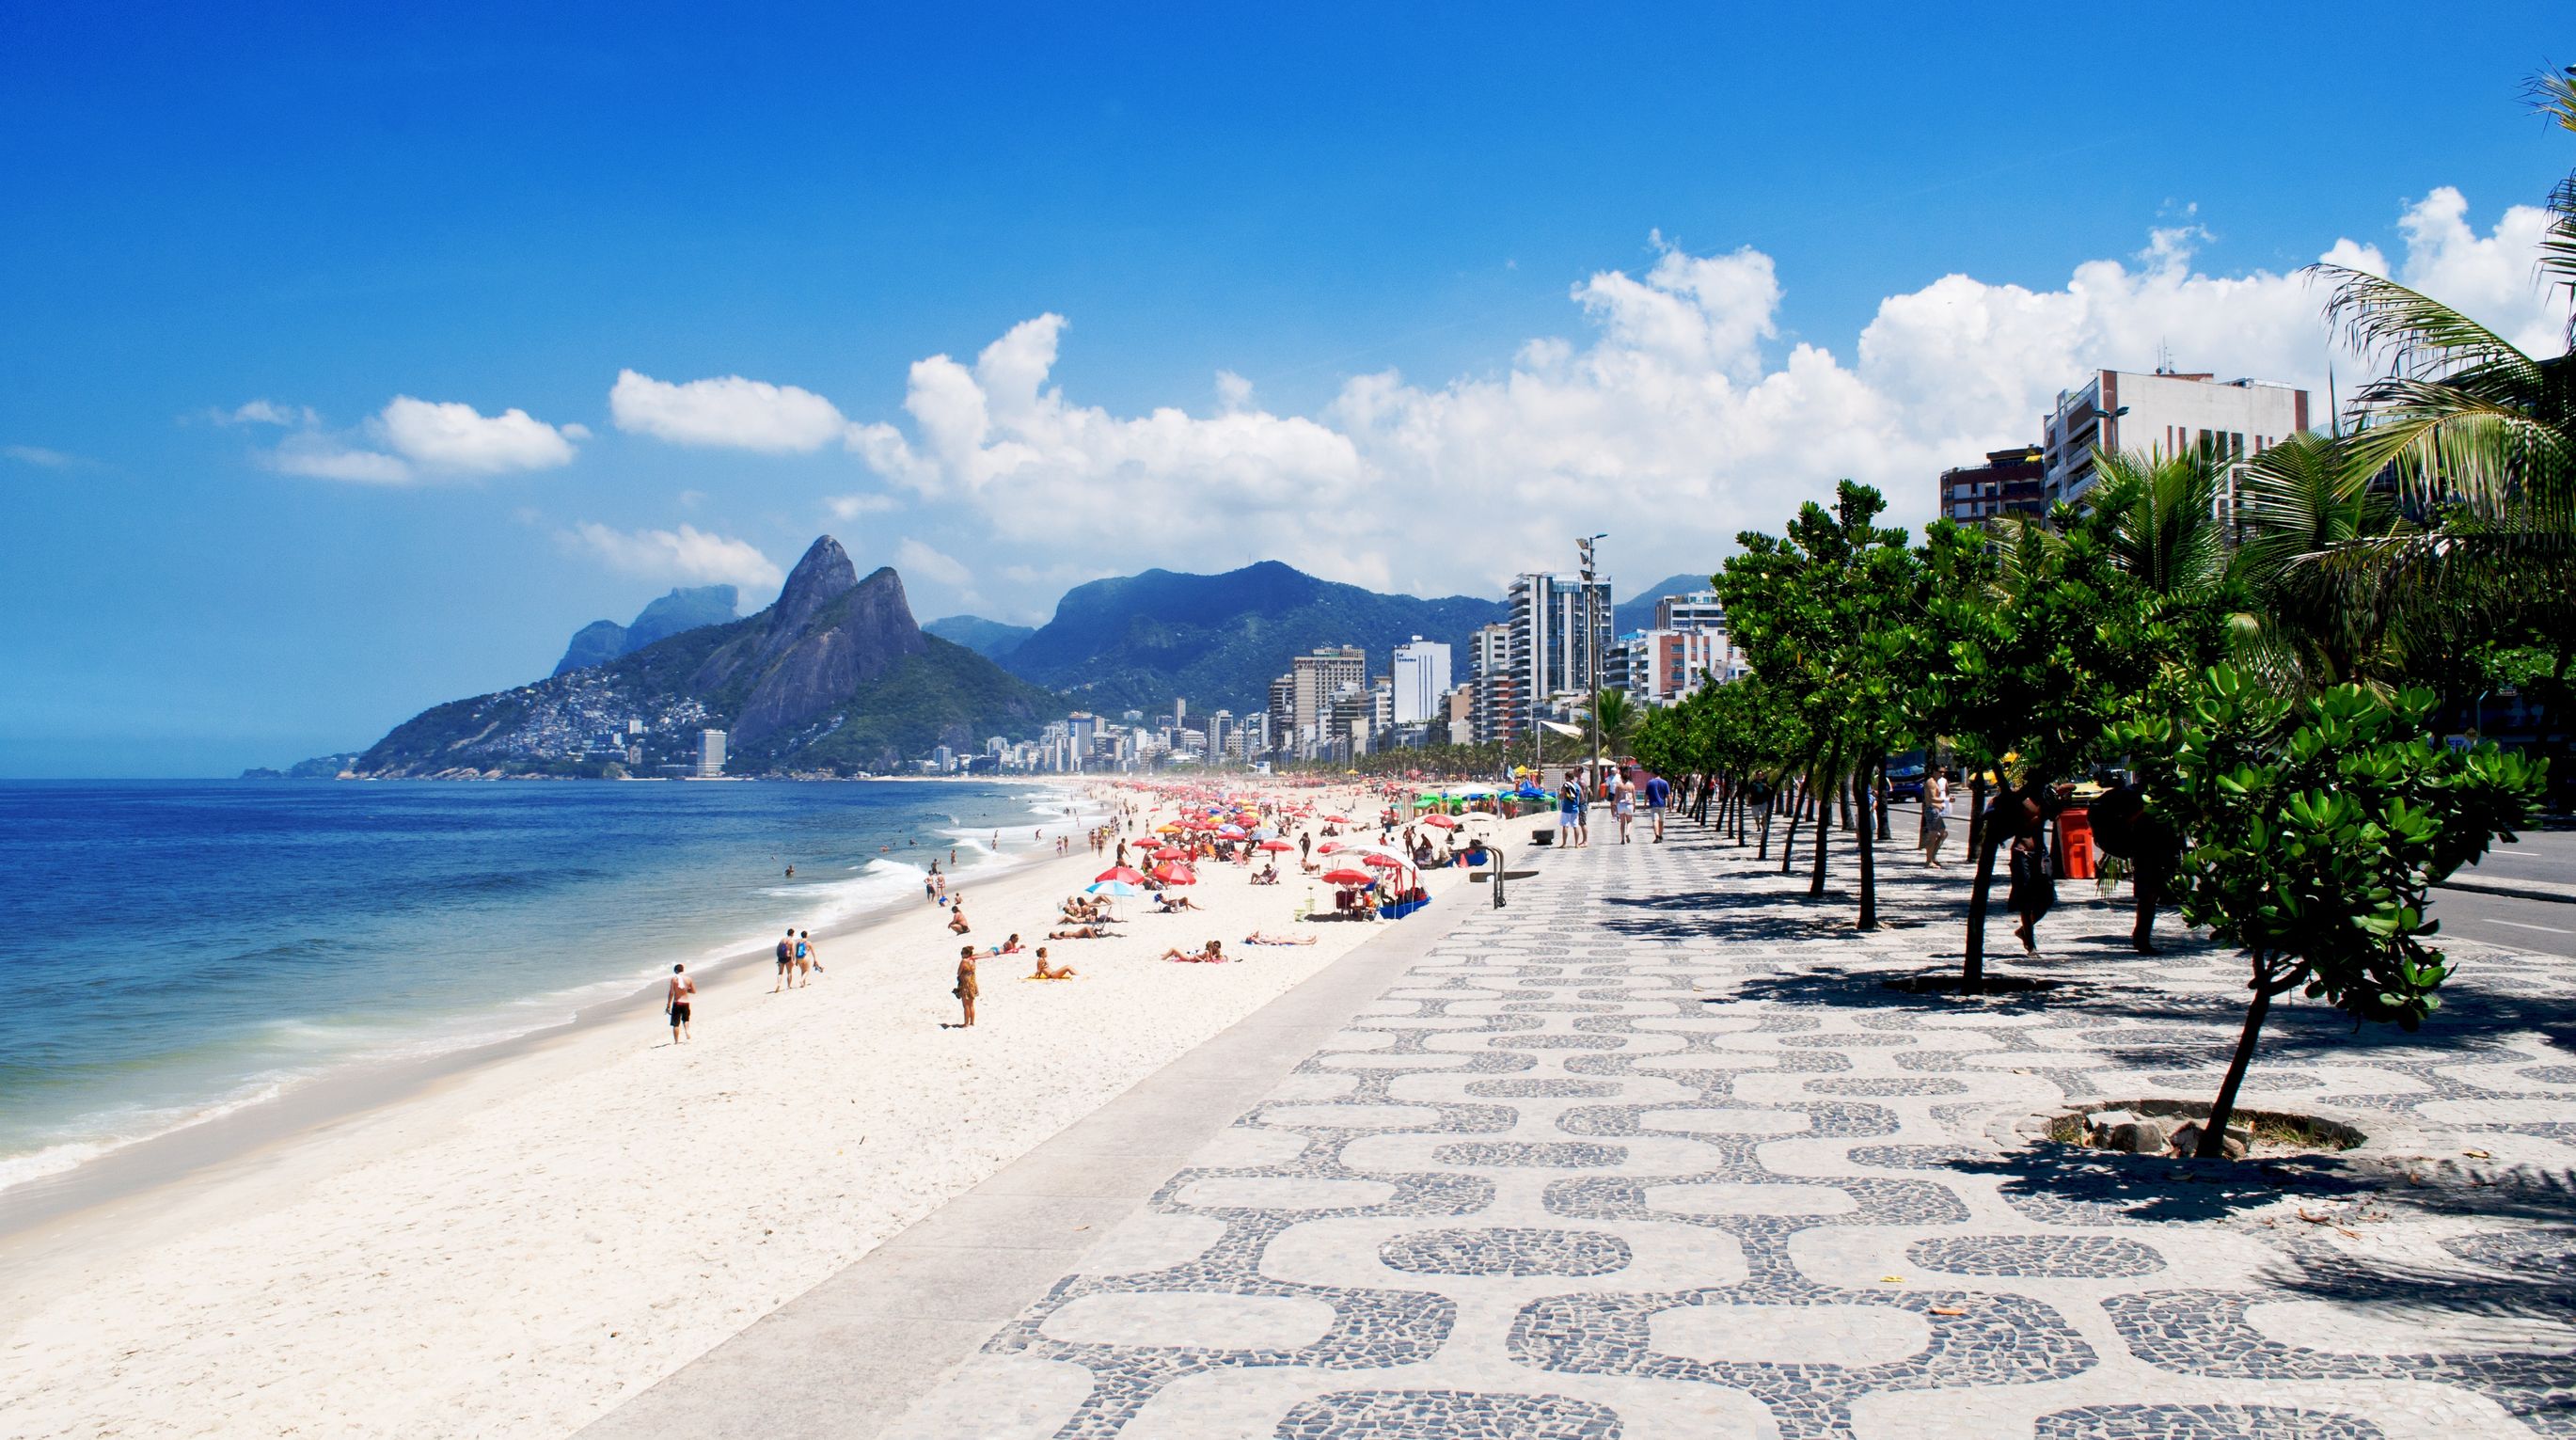 Ipanema-beach-in-Rio-de-Janeiro-Brazil